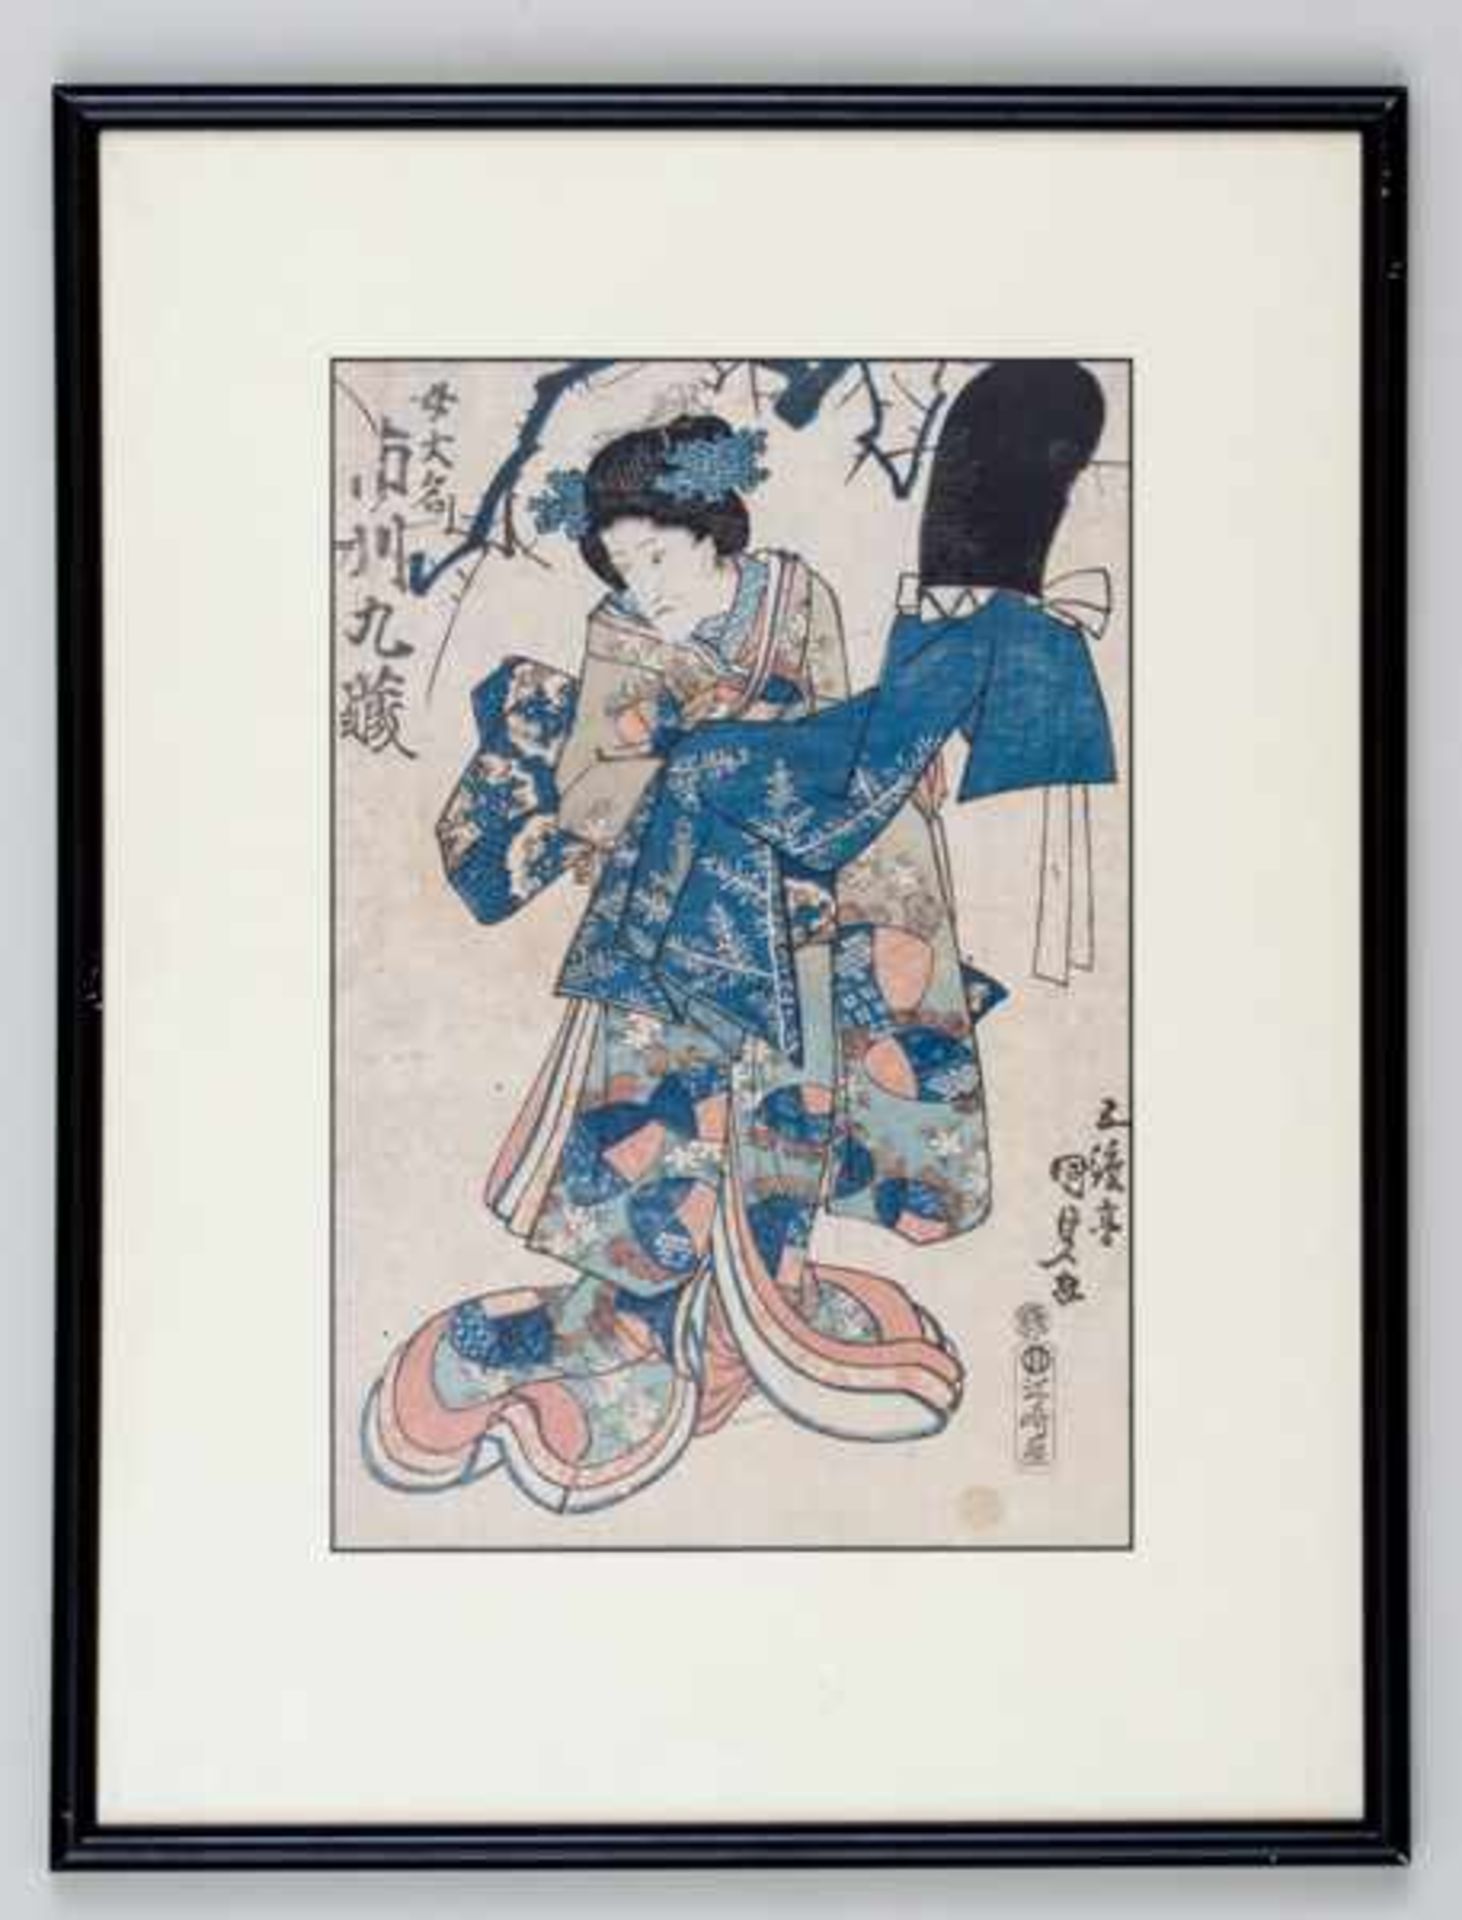 UTAGAWA KUNISADA I = TOYOKUNI III (1786 - 1865) Original woodblock print. Japan, The kabuki actor